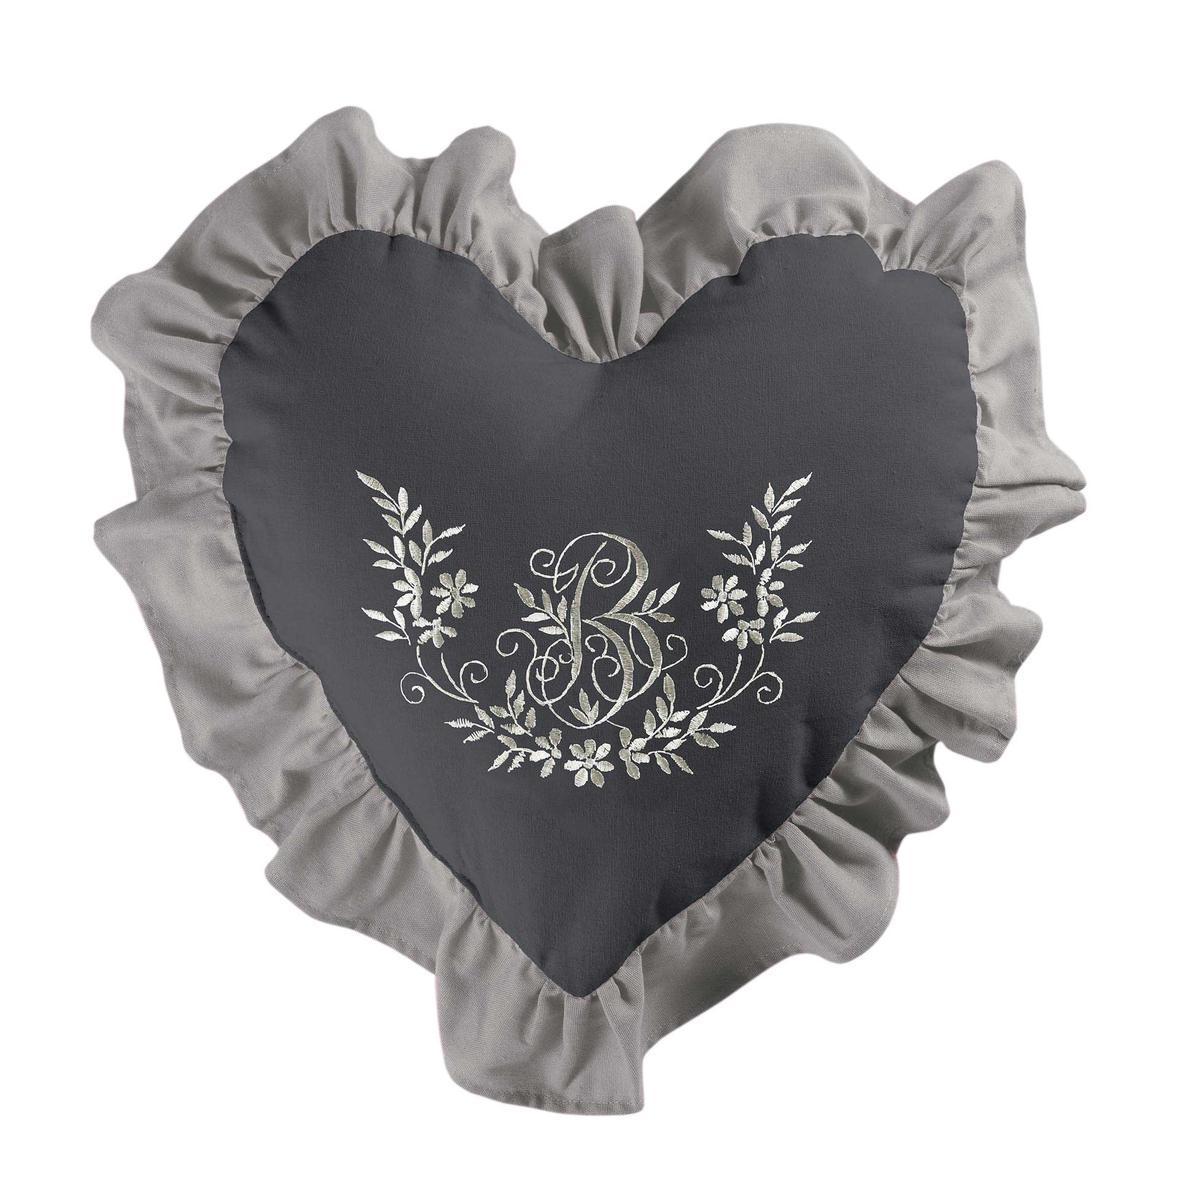 Coussin cœur bonheur - 40 x 40 cm - Marron et gris